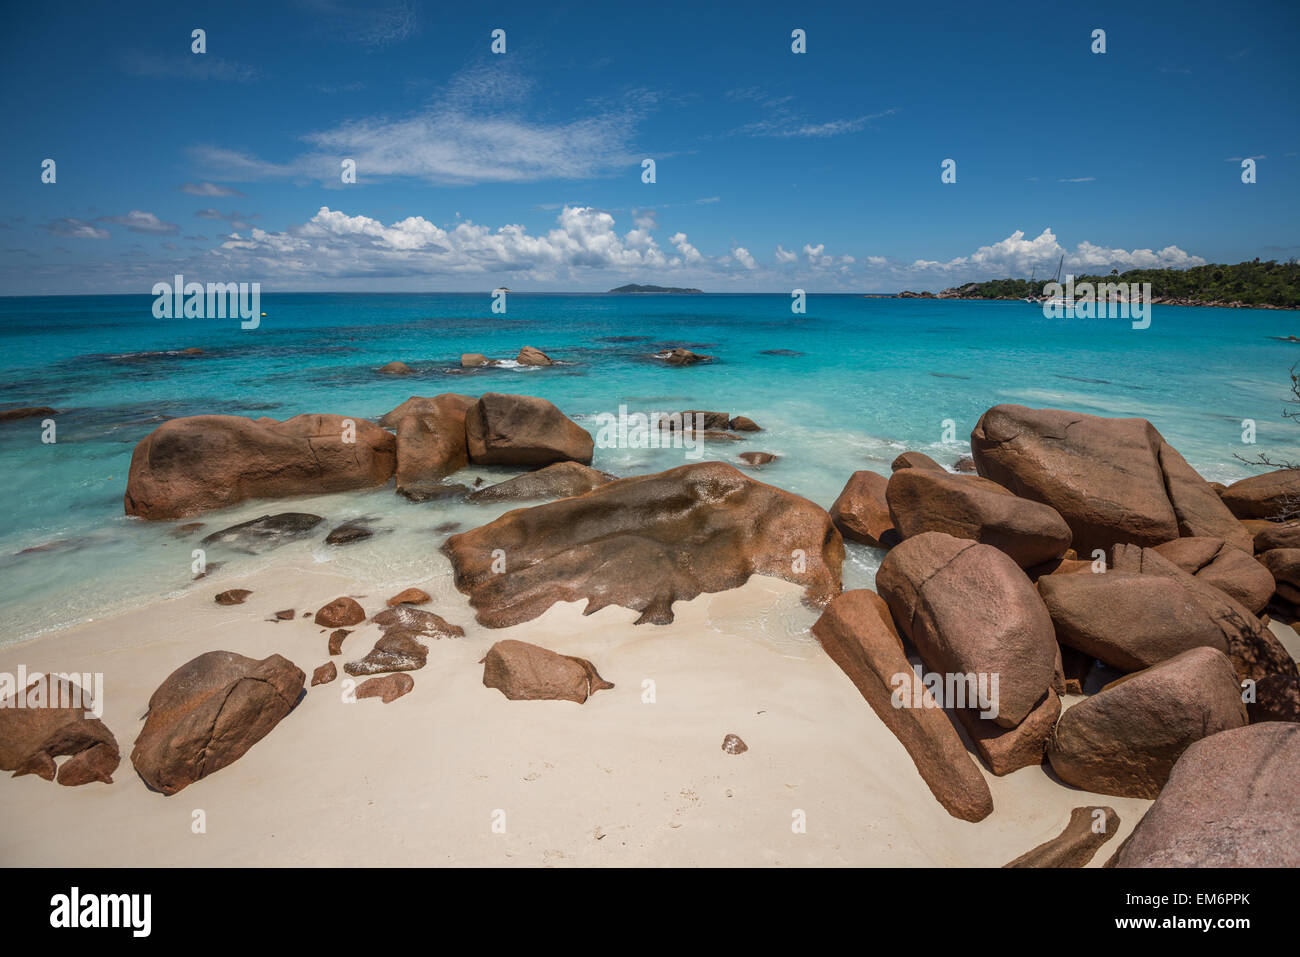 Plage de l'île tropicale, Anse Lazio Praslin, Seychelles Banque D'Images